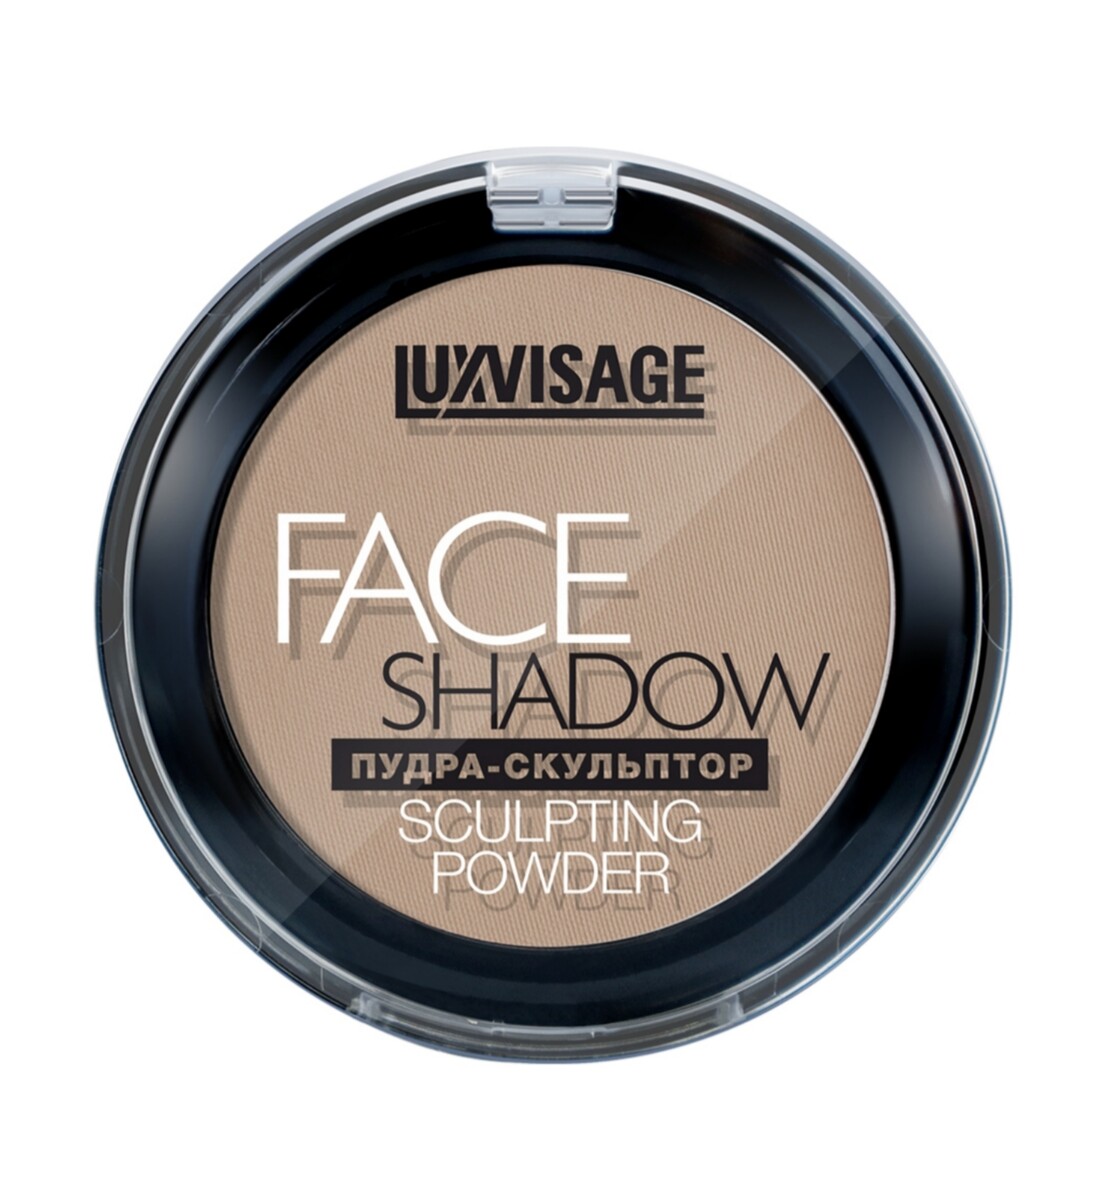 Luxvisage пудра-скульптор luxvisage face shadow, тон 10 warm beige